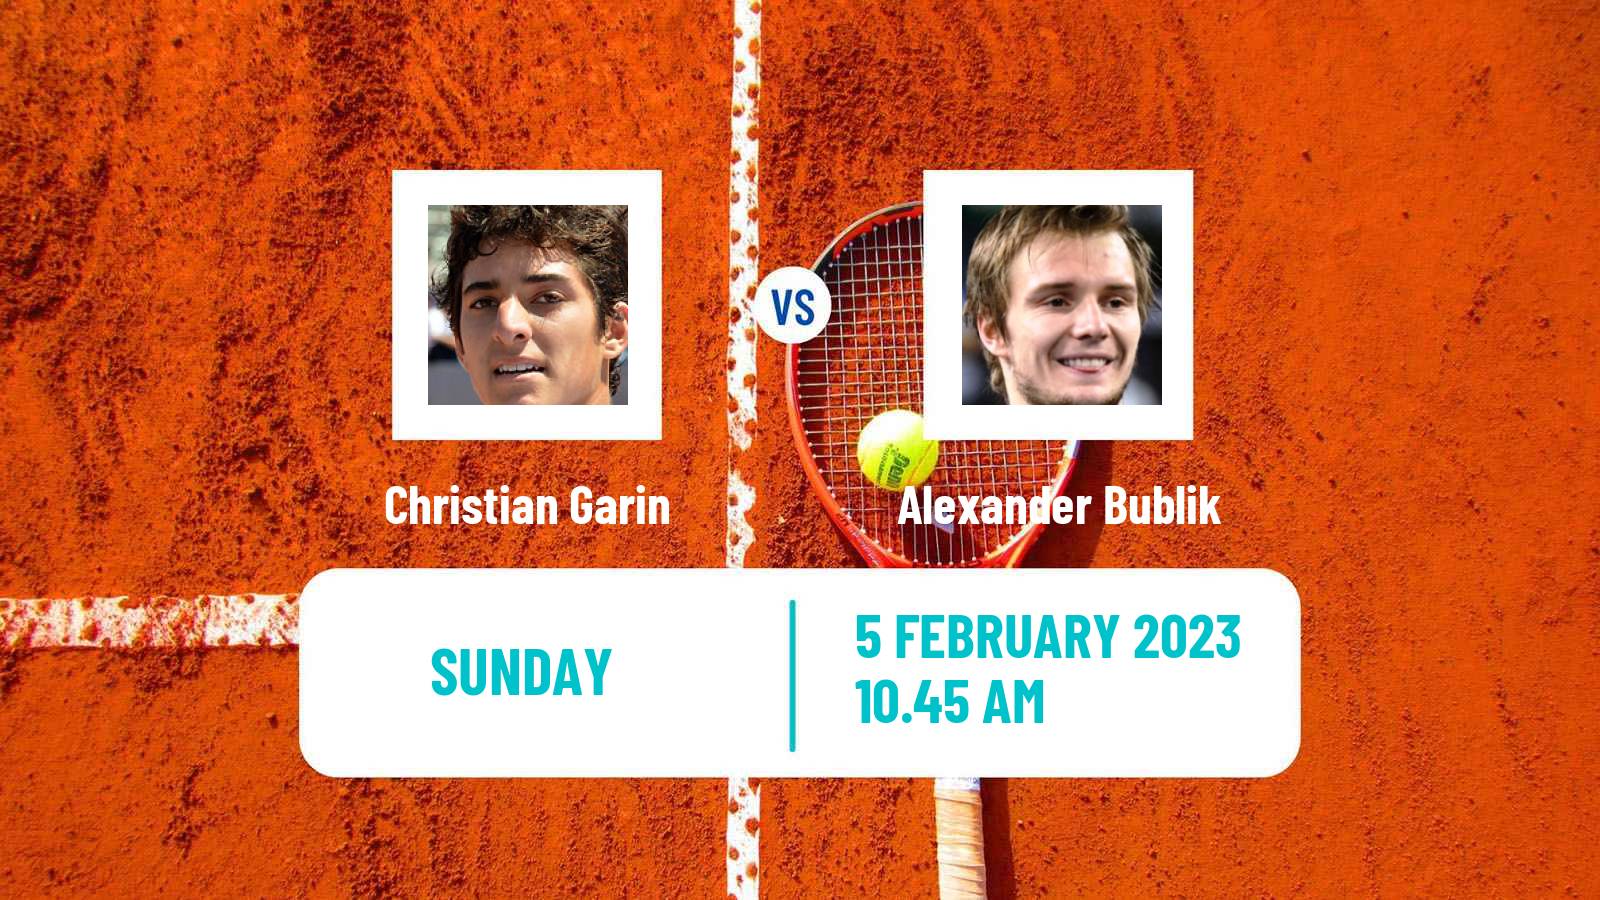 Tennis Davis Cup World Group Christian Garin - Alexander Bublik